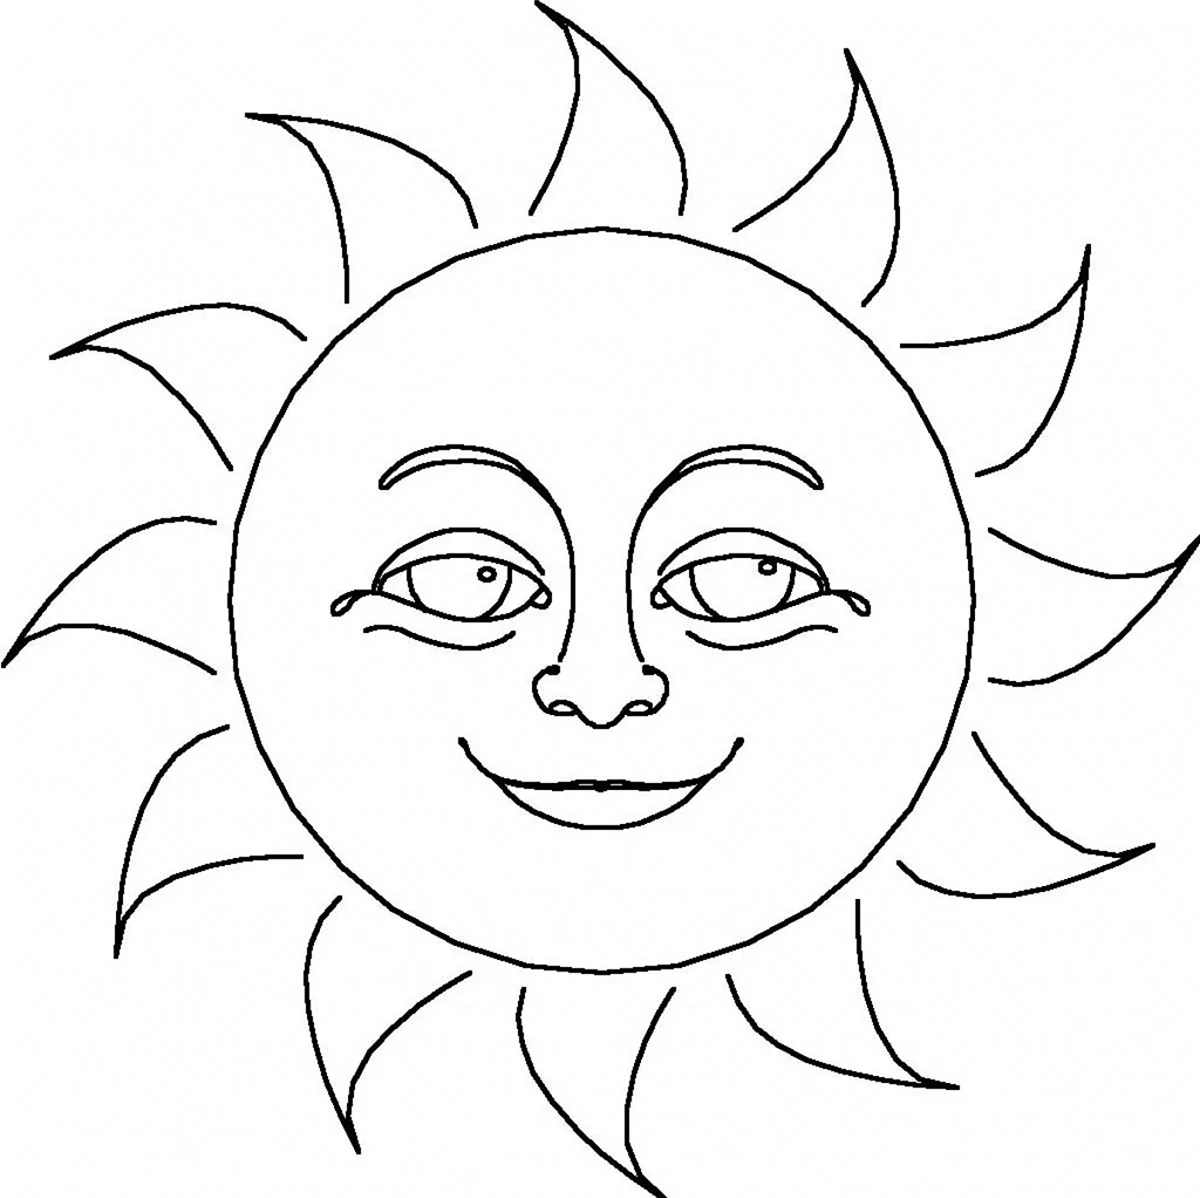 Солнышко раскраска для детей. Своими руками